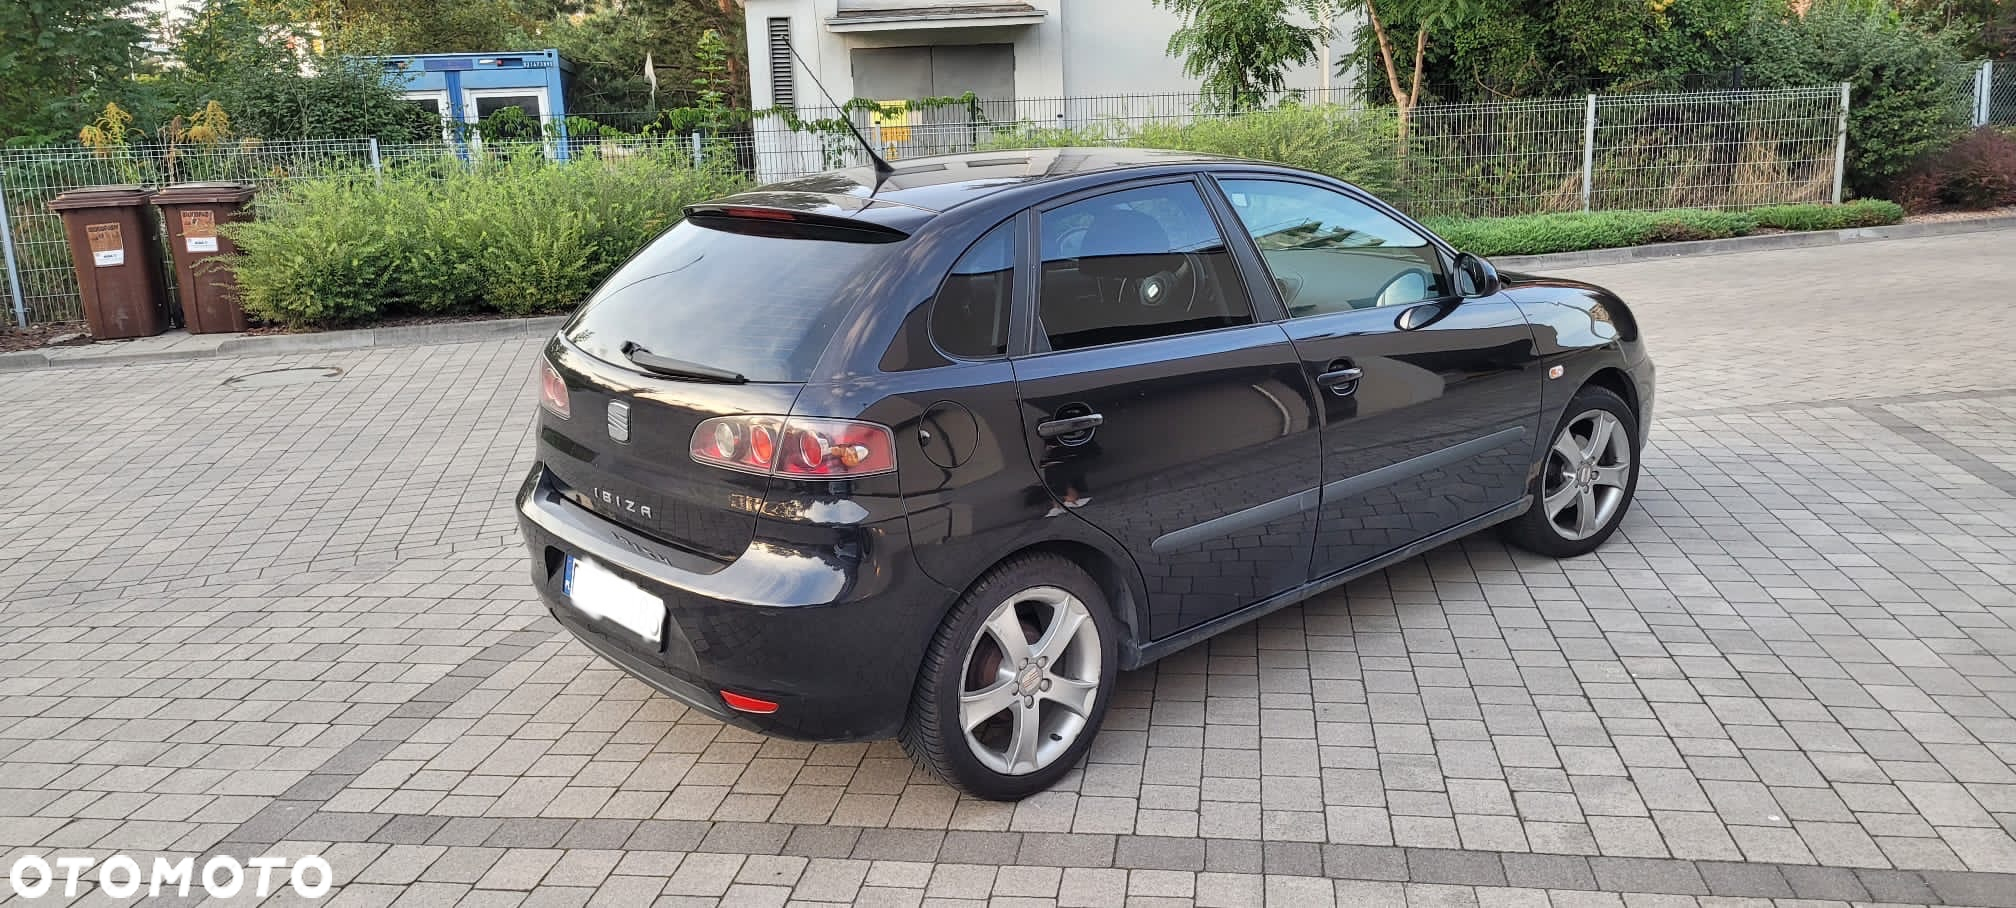 Seat Ibiza 1.4 16V Sport - 3